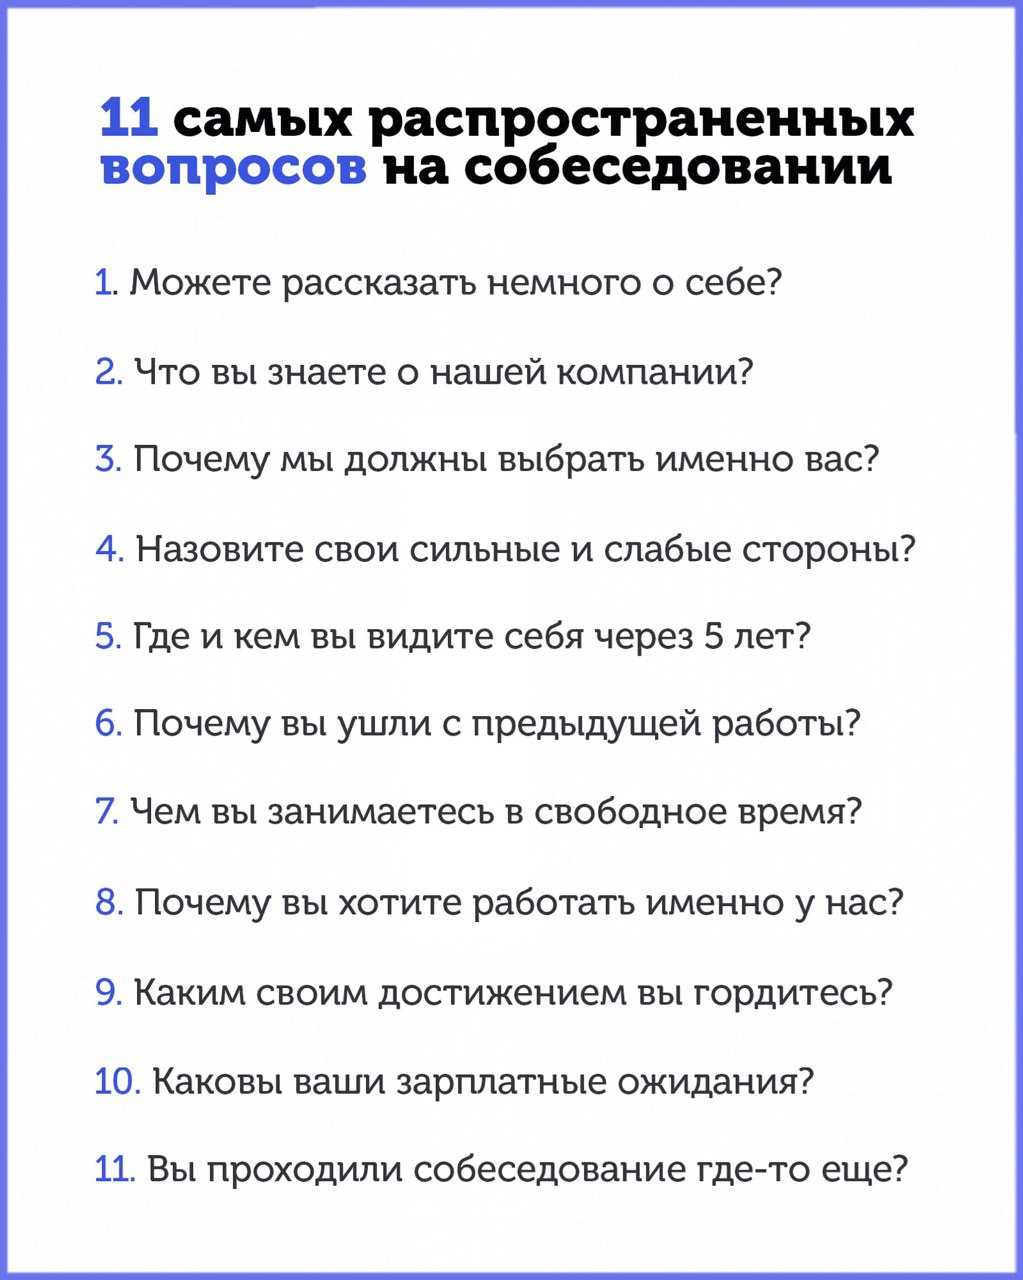 Как стать массажистом: с чего начать? :: businessman.ru